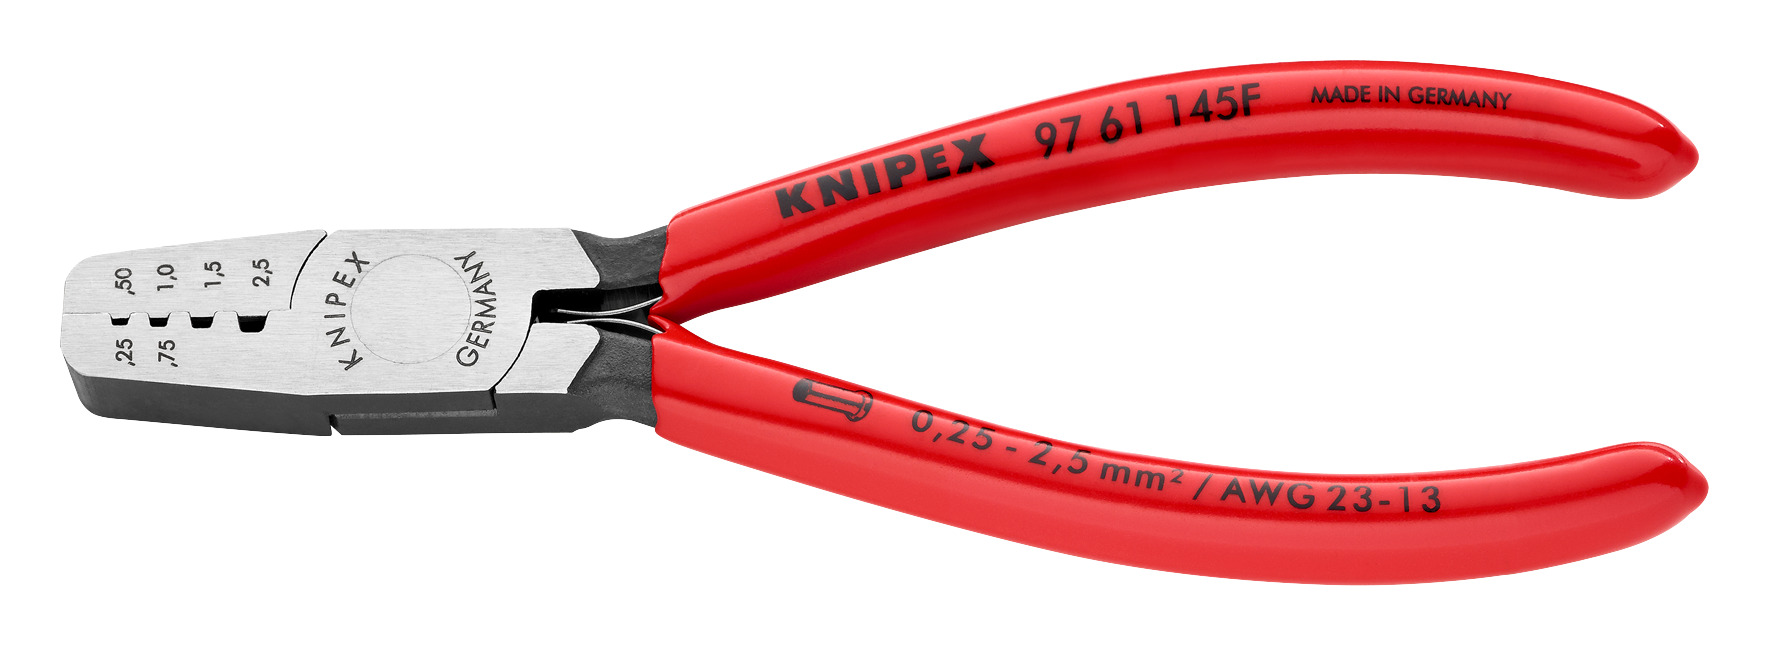 Knipex Pince à sertir, 145 mm 97 61 145 F - acheter chez